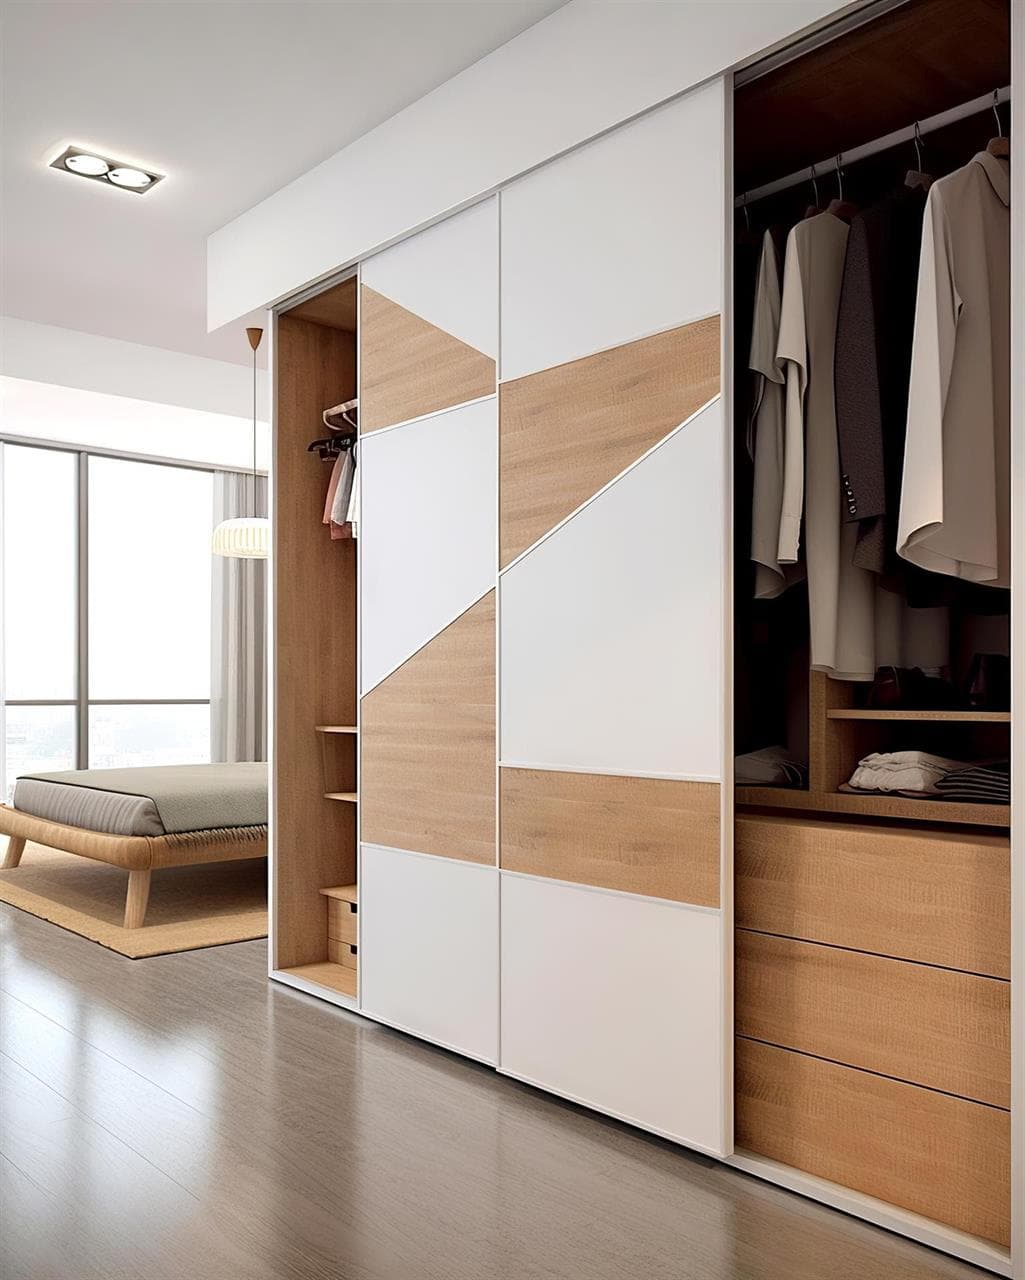 La importancia del diseño de armarios para optimizar tu dormitorio